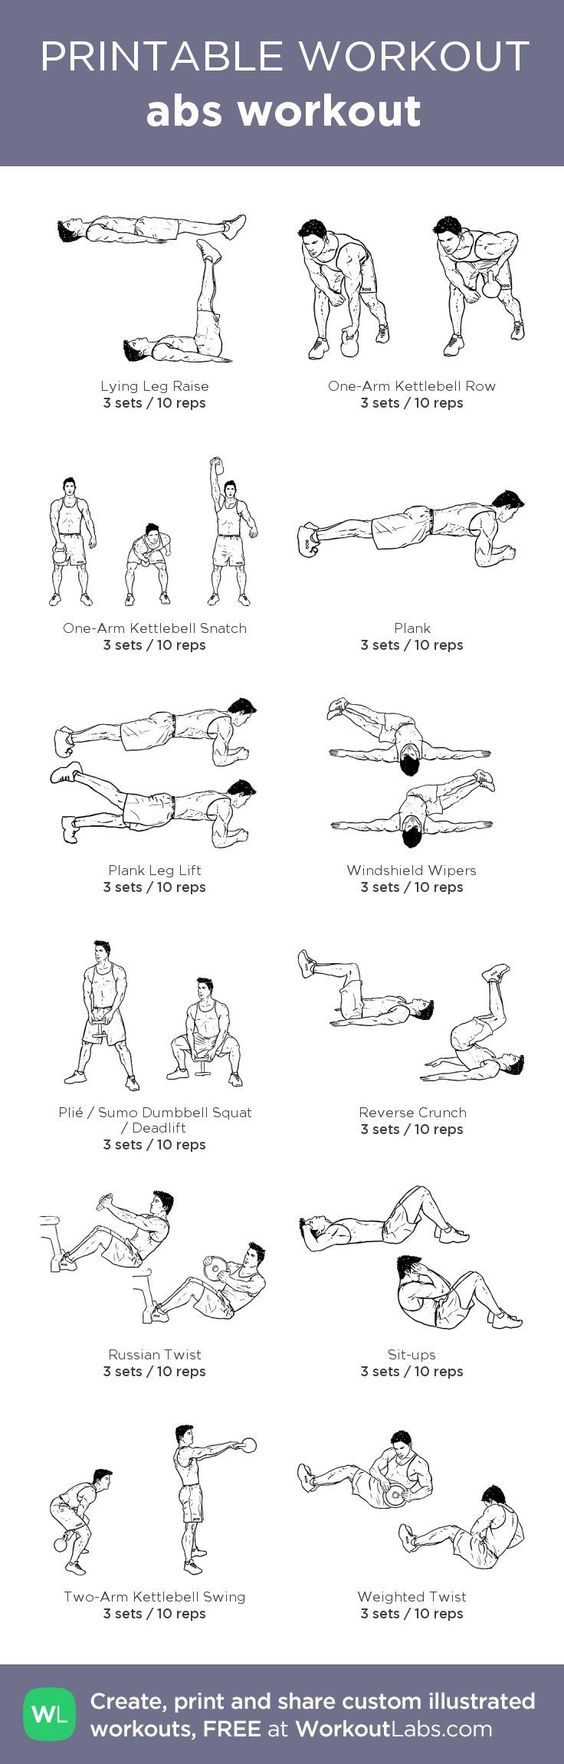 ab exercises for men